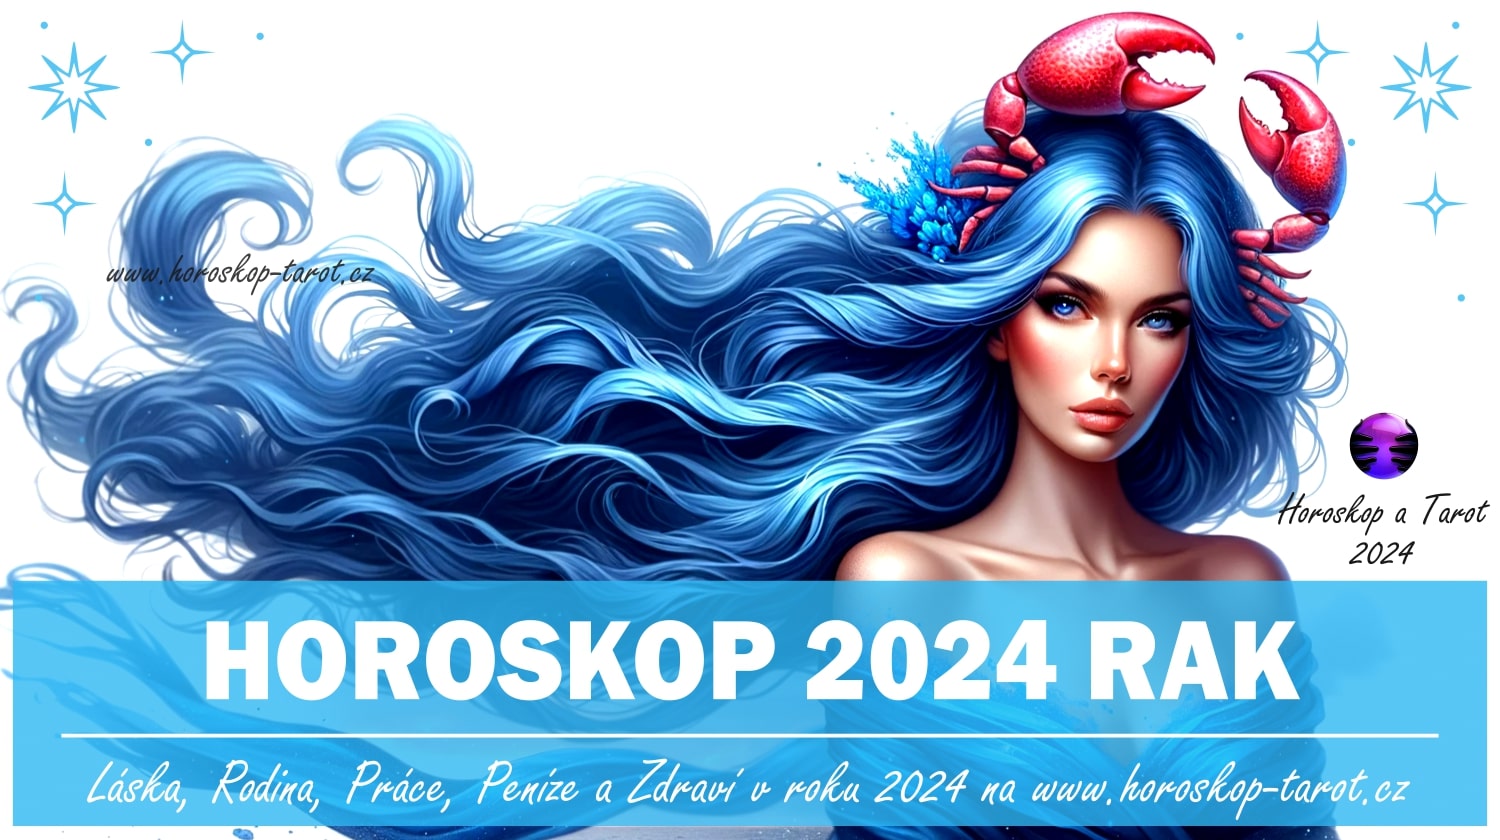 Horoskop 2024 Rak horoskoptarot.cz